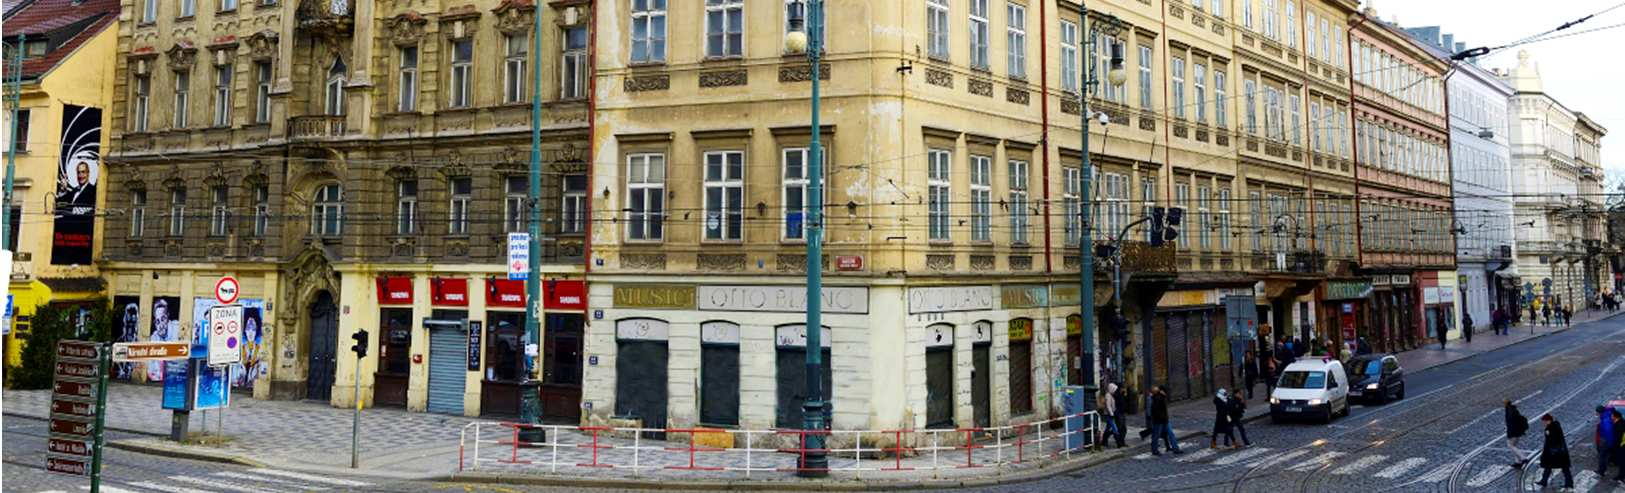 PŘEDSTAVENÍ PŘÍLEŽITOSTI THE INVESTMENT OPPORTUNITY Poradenská společnost CBRE byla exkluzivně pověřena společností QPR Prague a. s. k prodeji historických objektů Na Praze 1 Malé Straně a to Újezd 14, 16 a Vítezná 18.